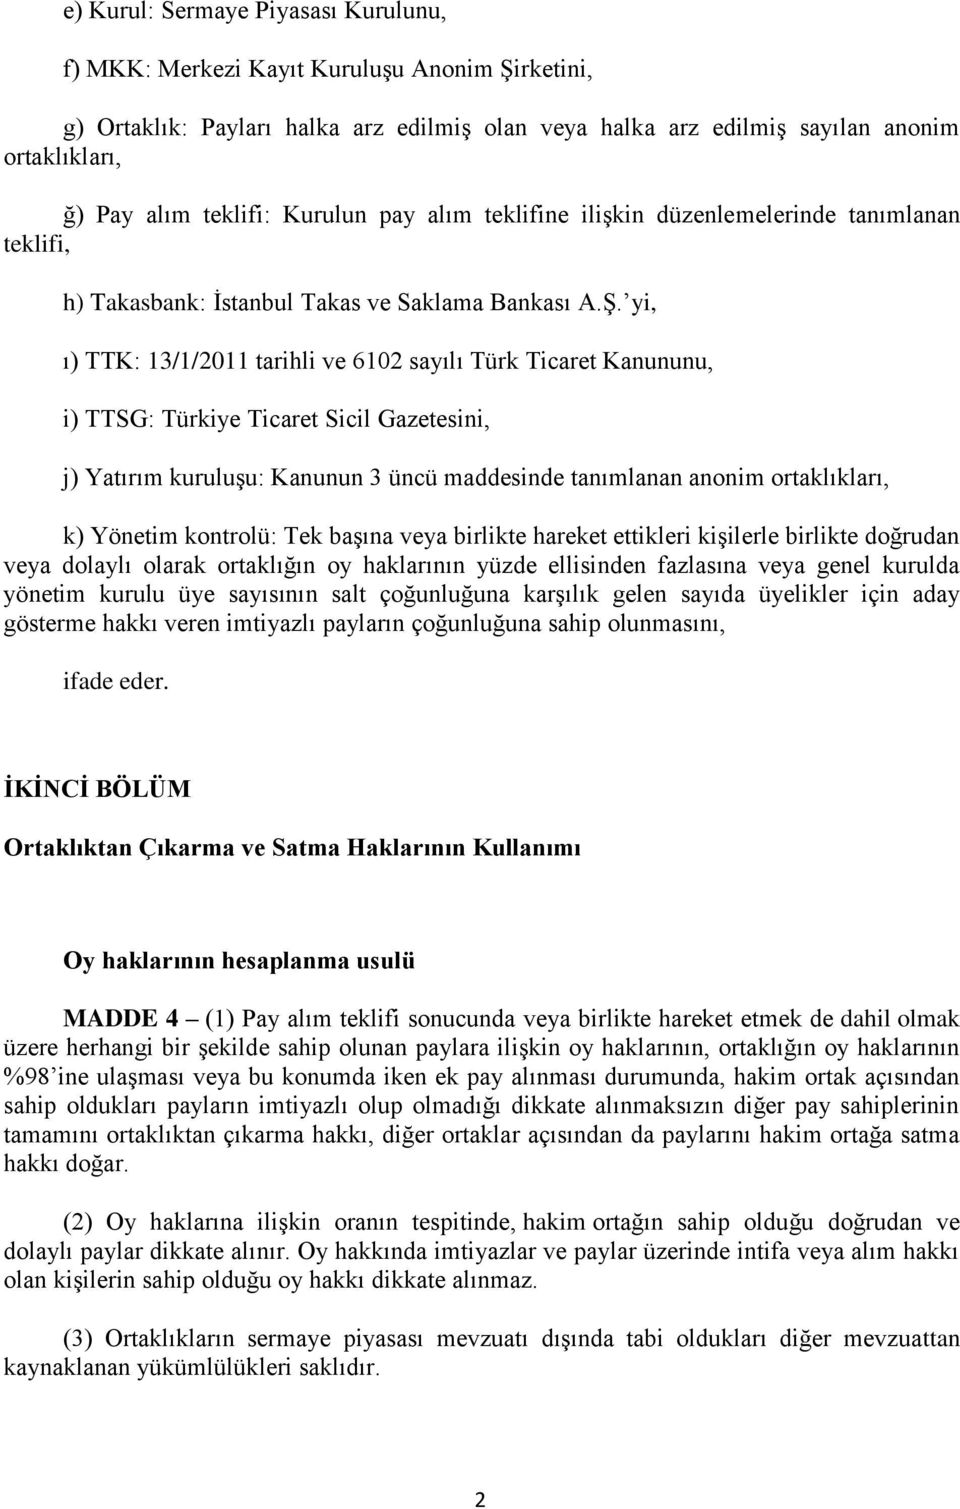 yi, ı) TTK: 13/1/2011 tarihli ve 6102 sayılı Türk Ticaret Kanununu, i) TTSG: Türkiye Ticaret Sicil Gazetesini, j) Yatırım kuruluşu: Kanunun 3 üncü maddesinde tanımlanan anonim ortaklıkları, k)